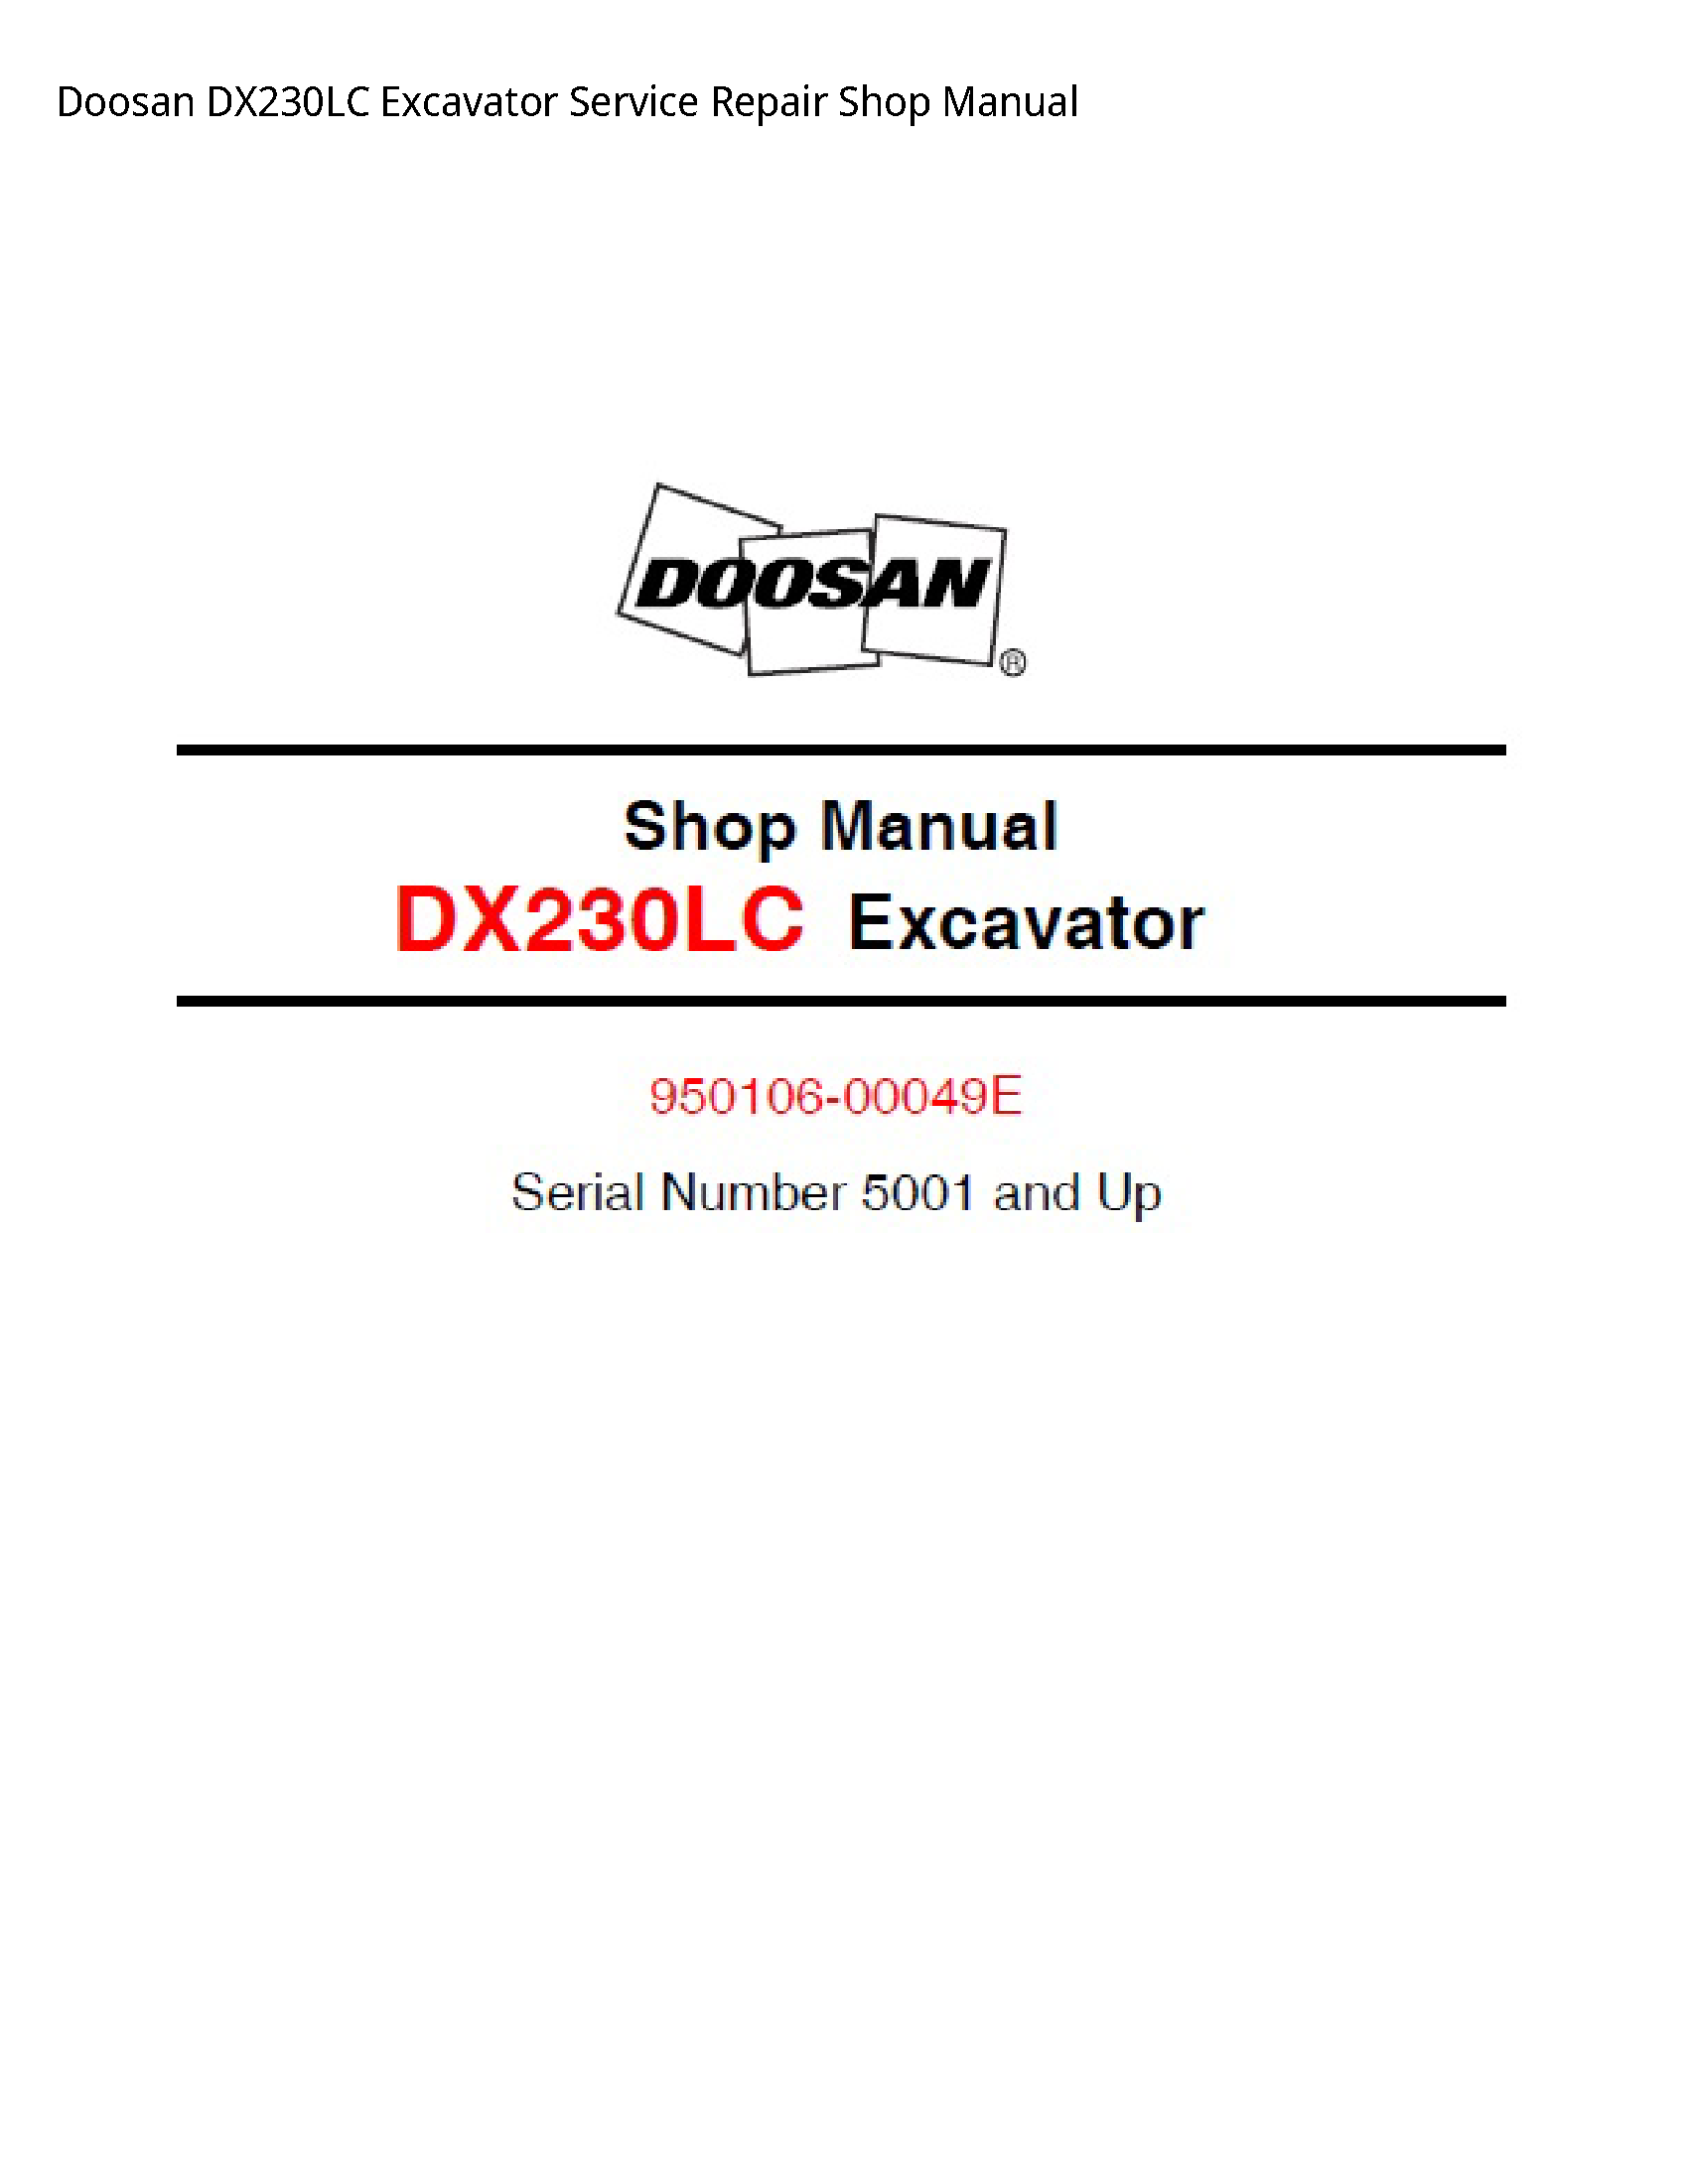 Doosan DX230LC Excavator manual